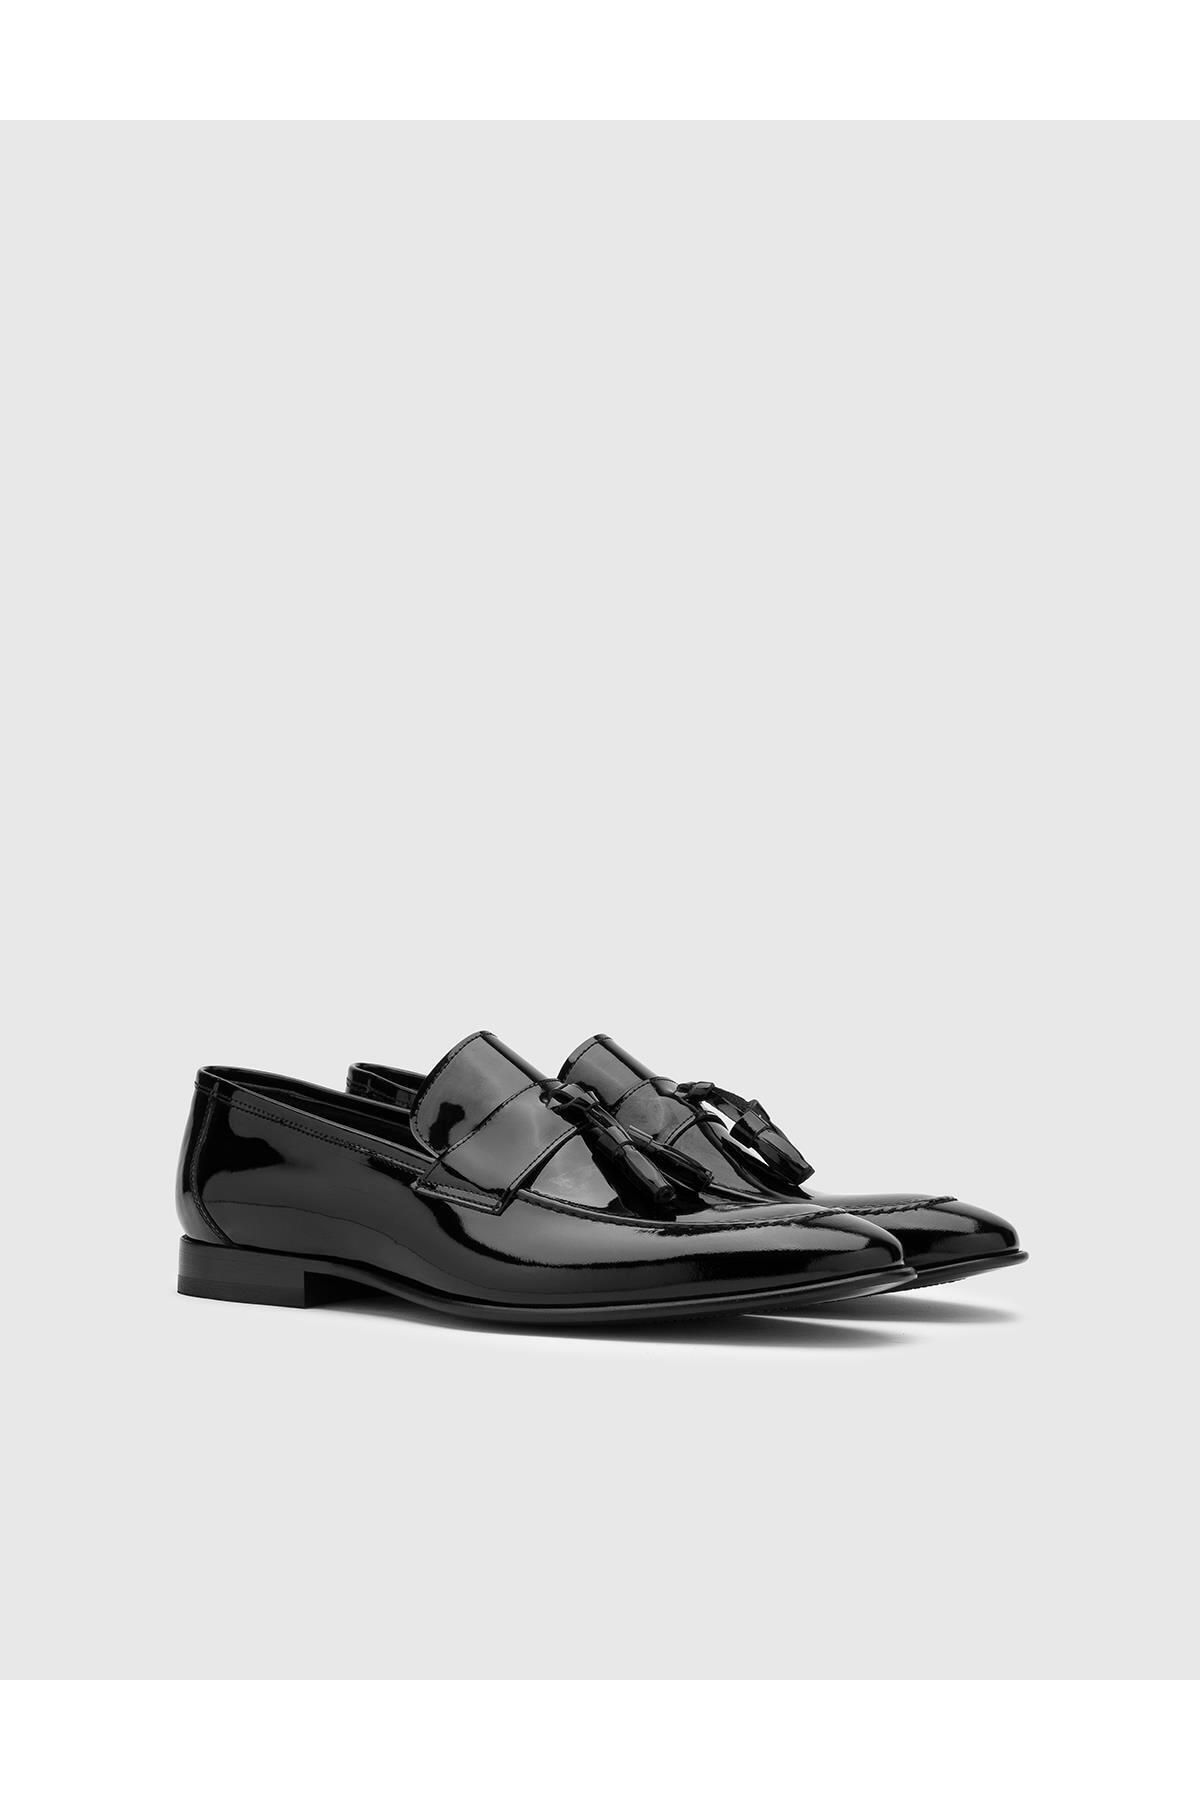 İlvi Celosia Hakiki Rugan Deri Erkek Siyah Klasik Ayakkabı Celosia-8130.1008